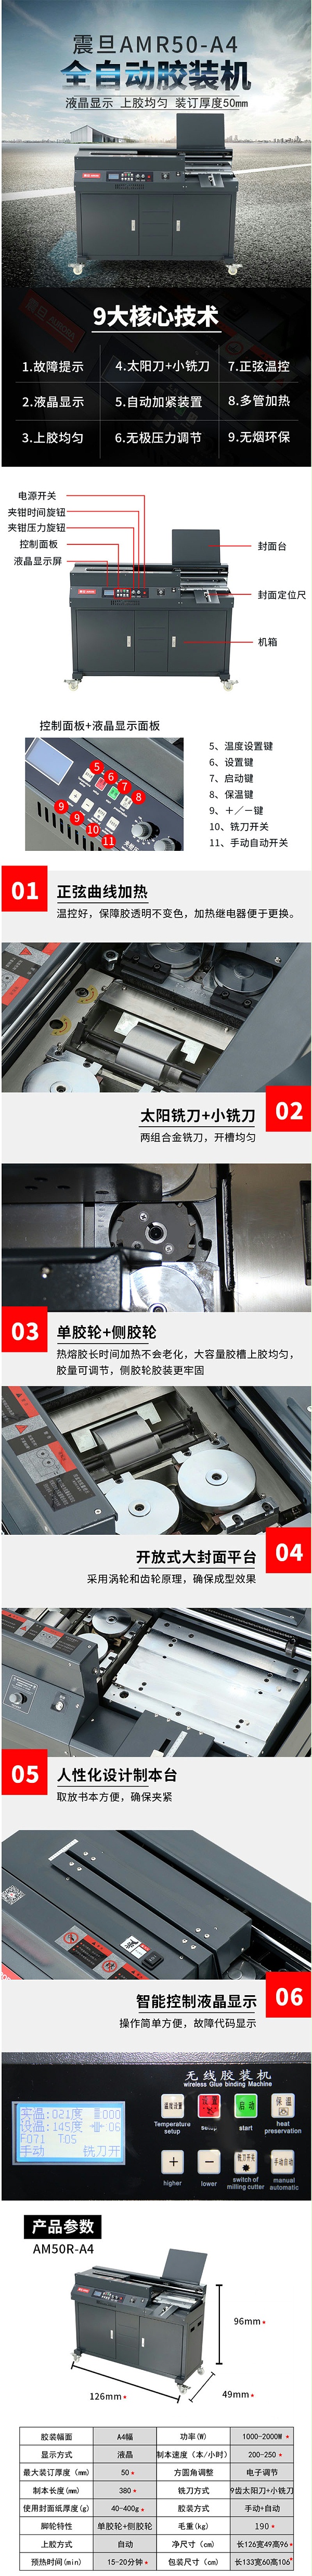 震旦AM50-A4胶印机